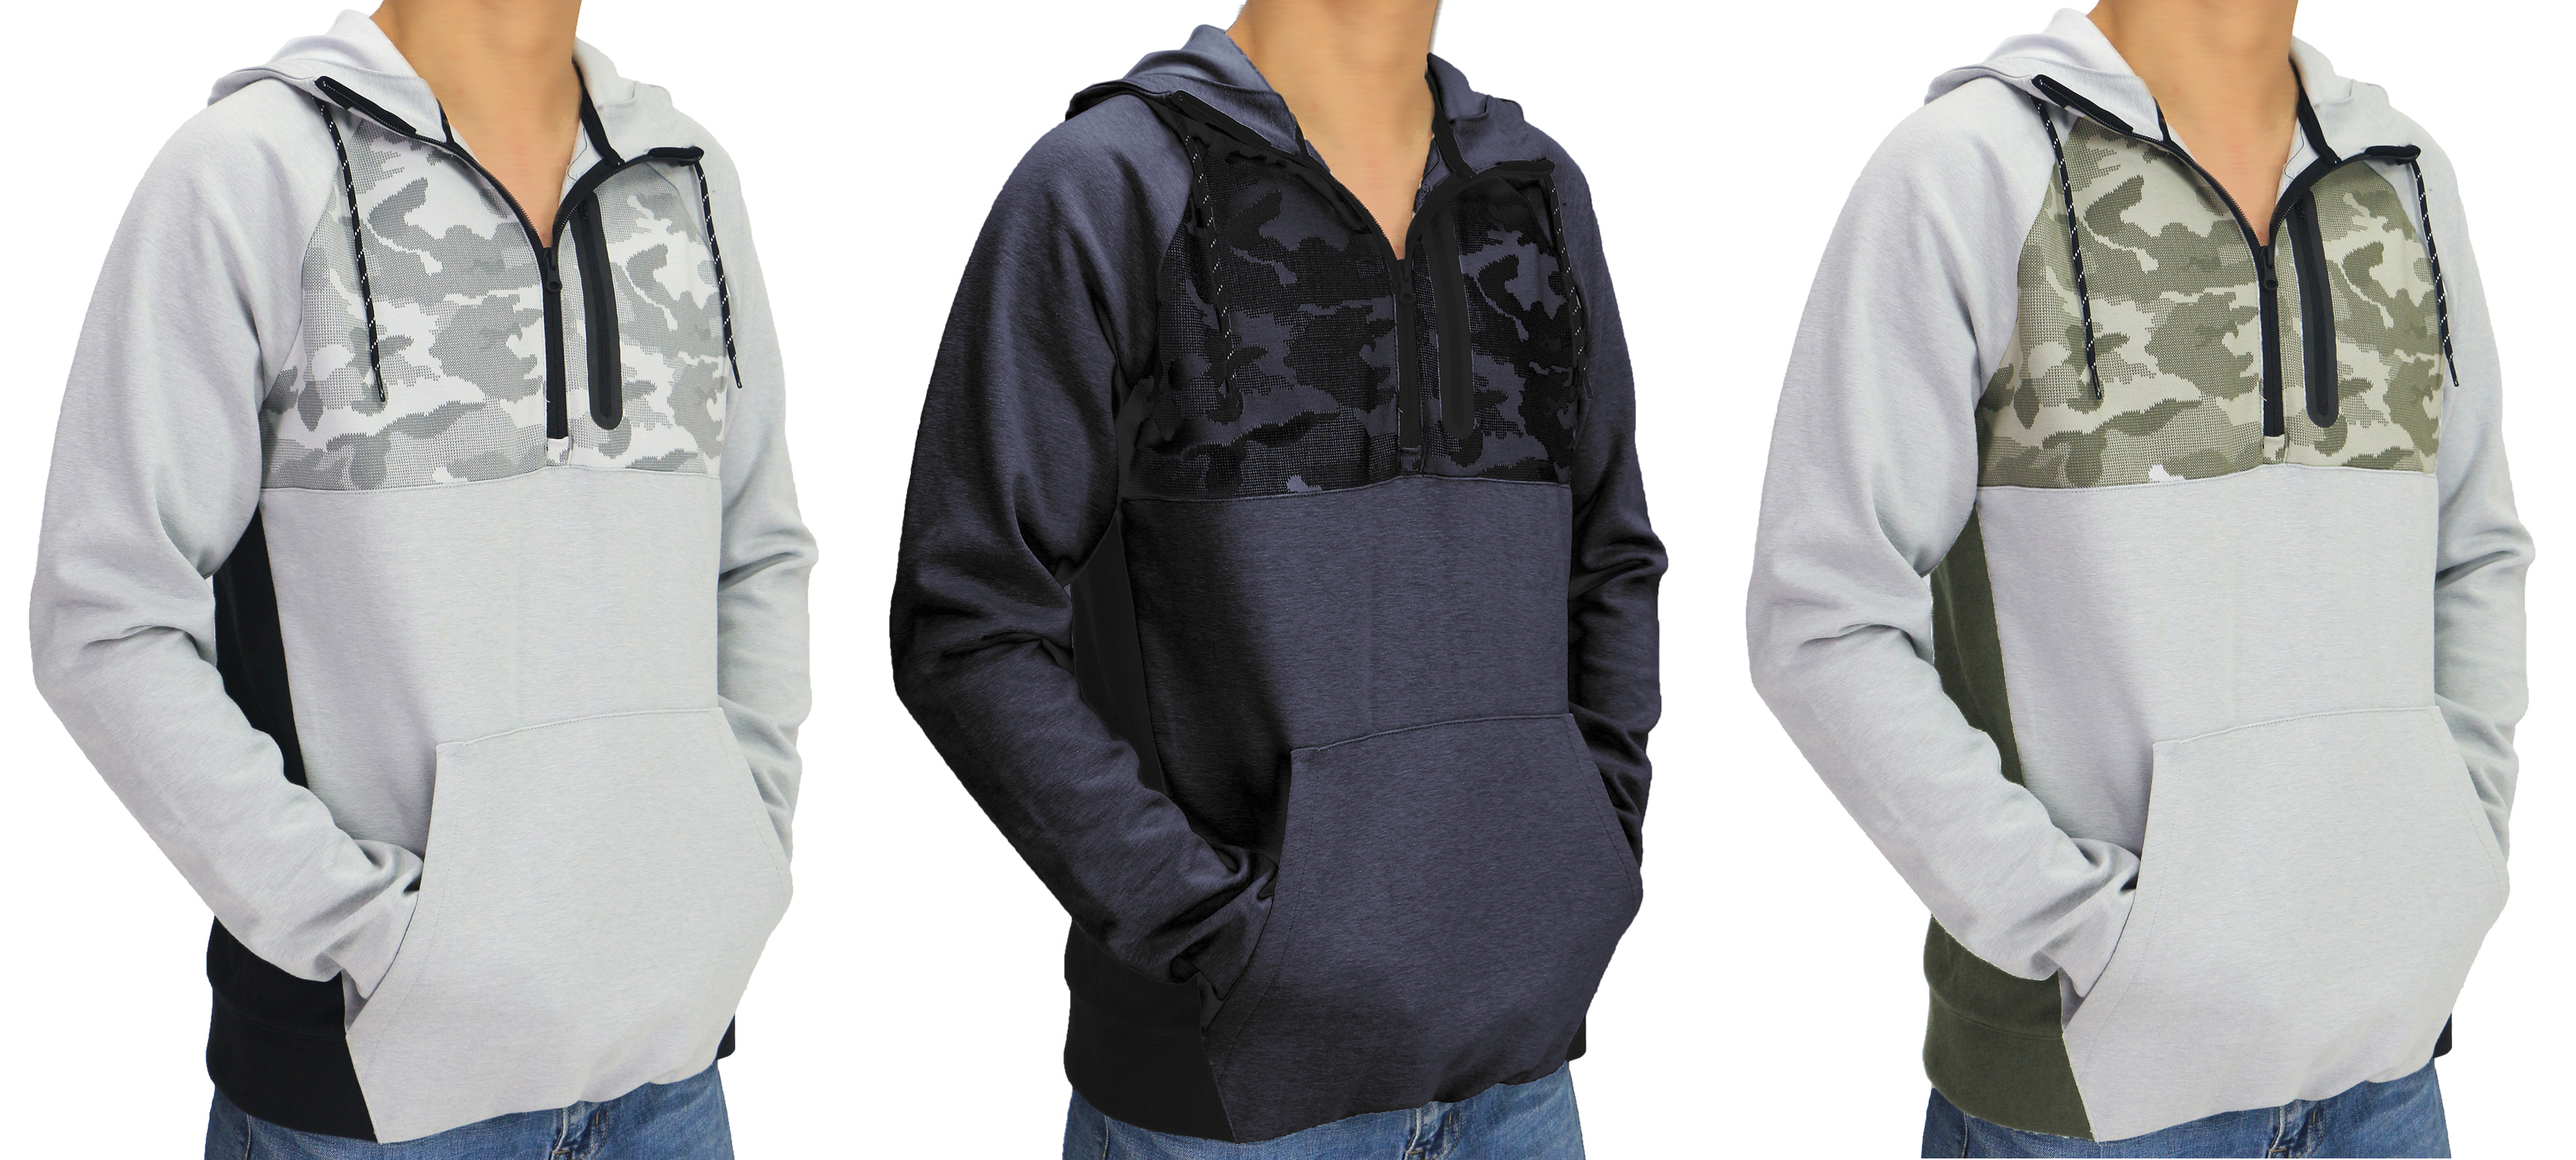 Men's Hooded Half Zip Sweatshirts - Choose Your Color(s)